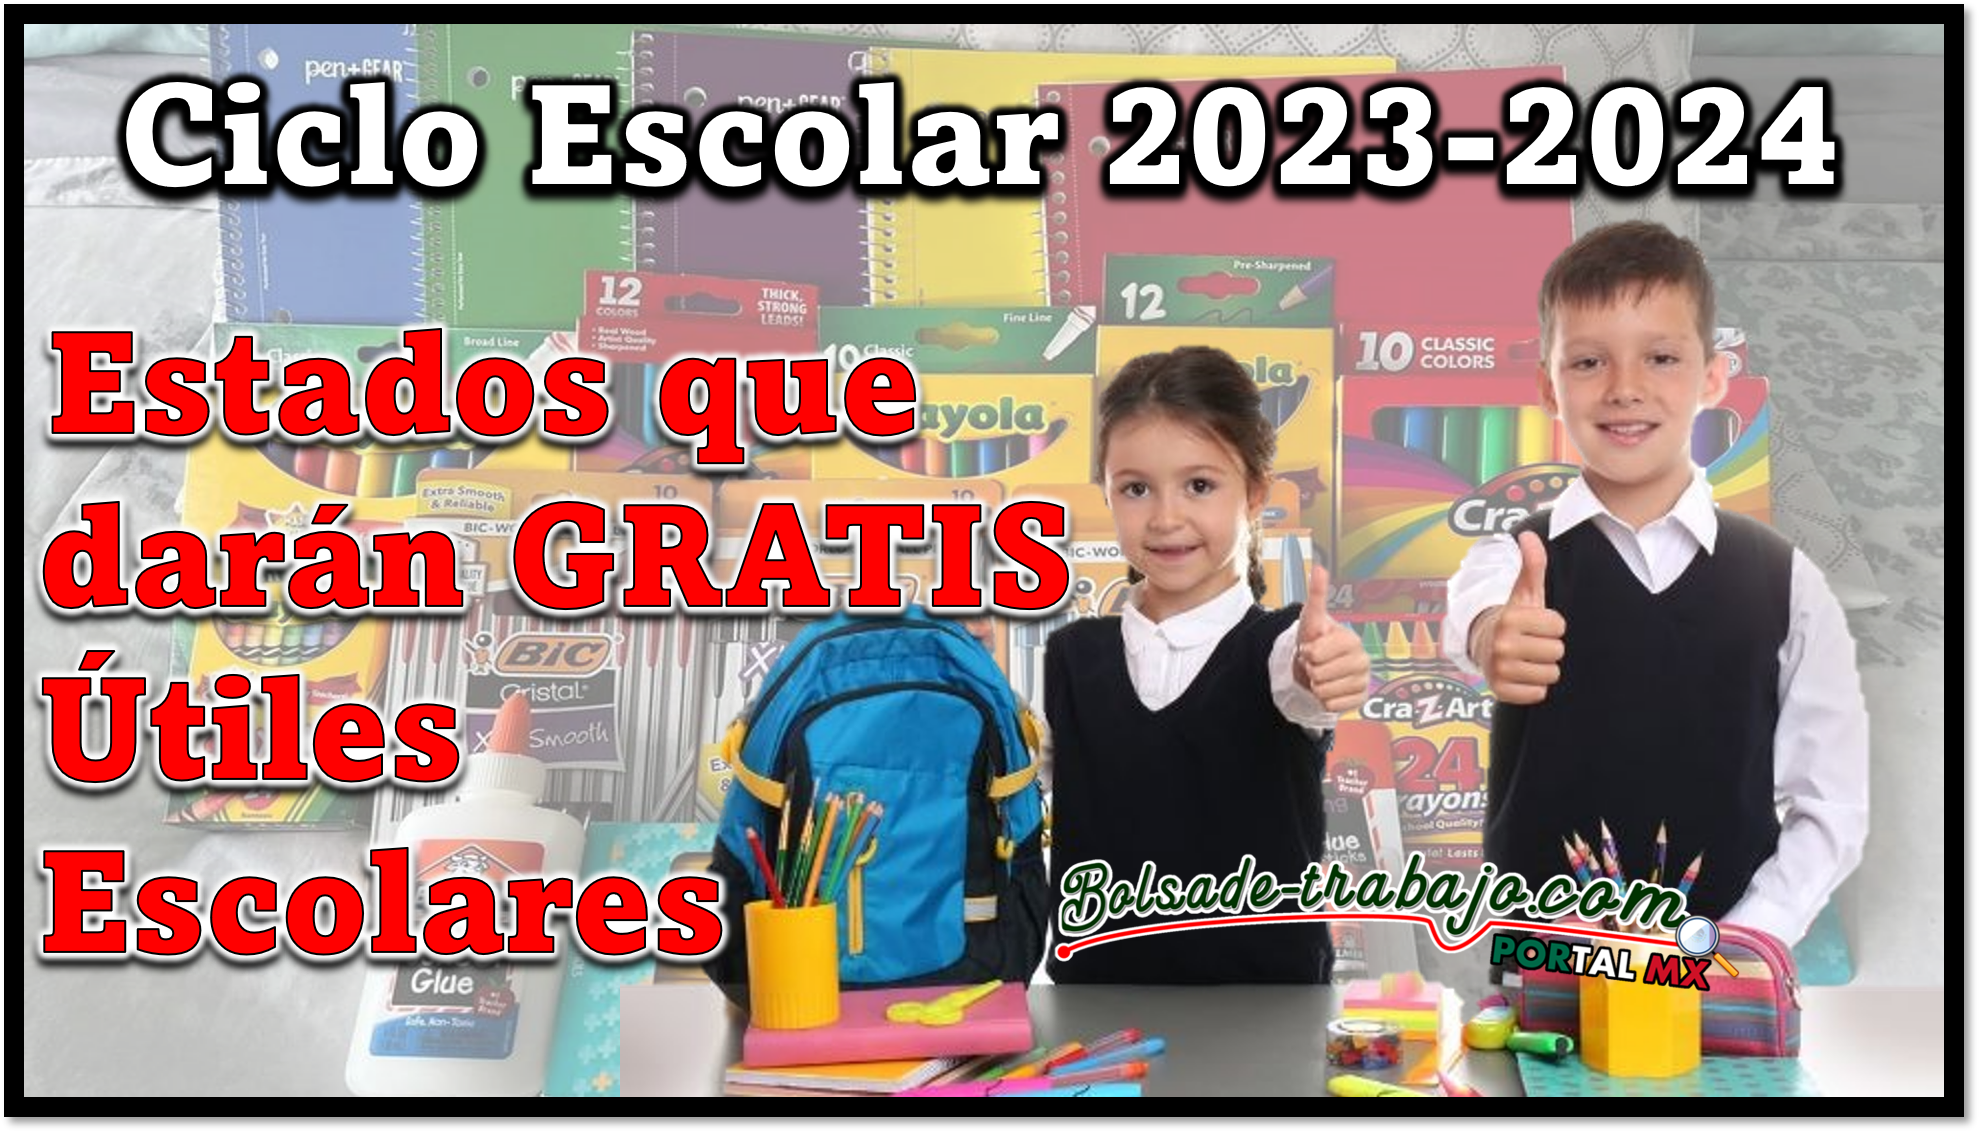 Ciclo Escolar 2023-2024: Estados que darán GRATIS Útiles Escolares